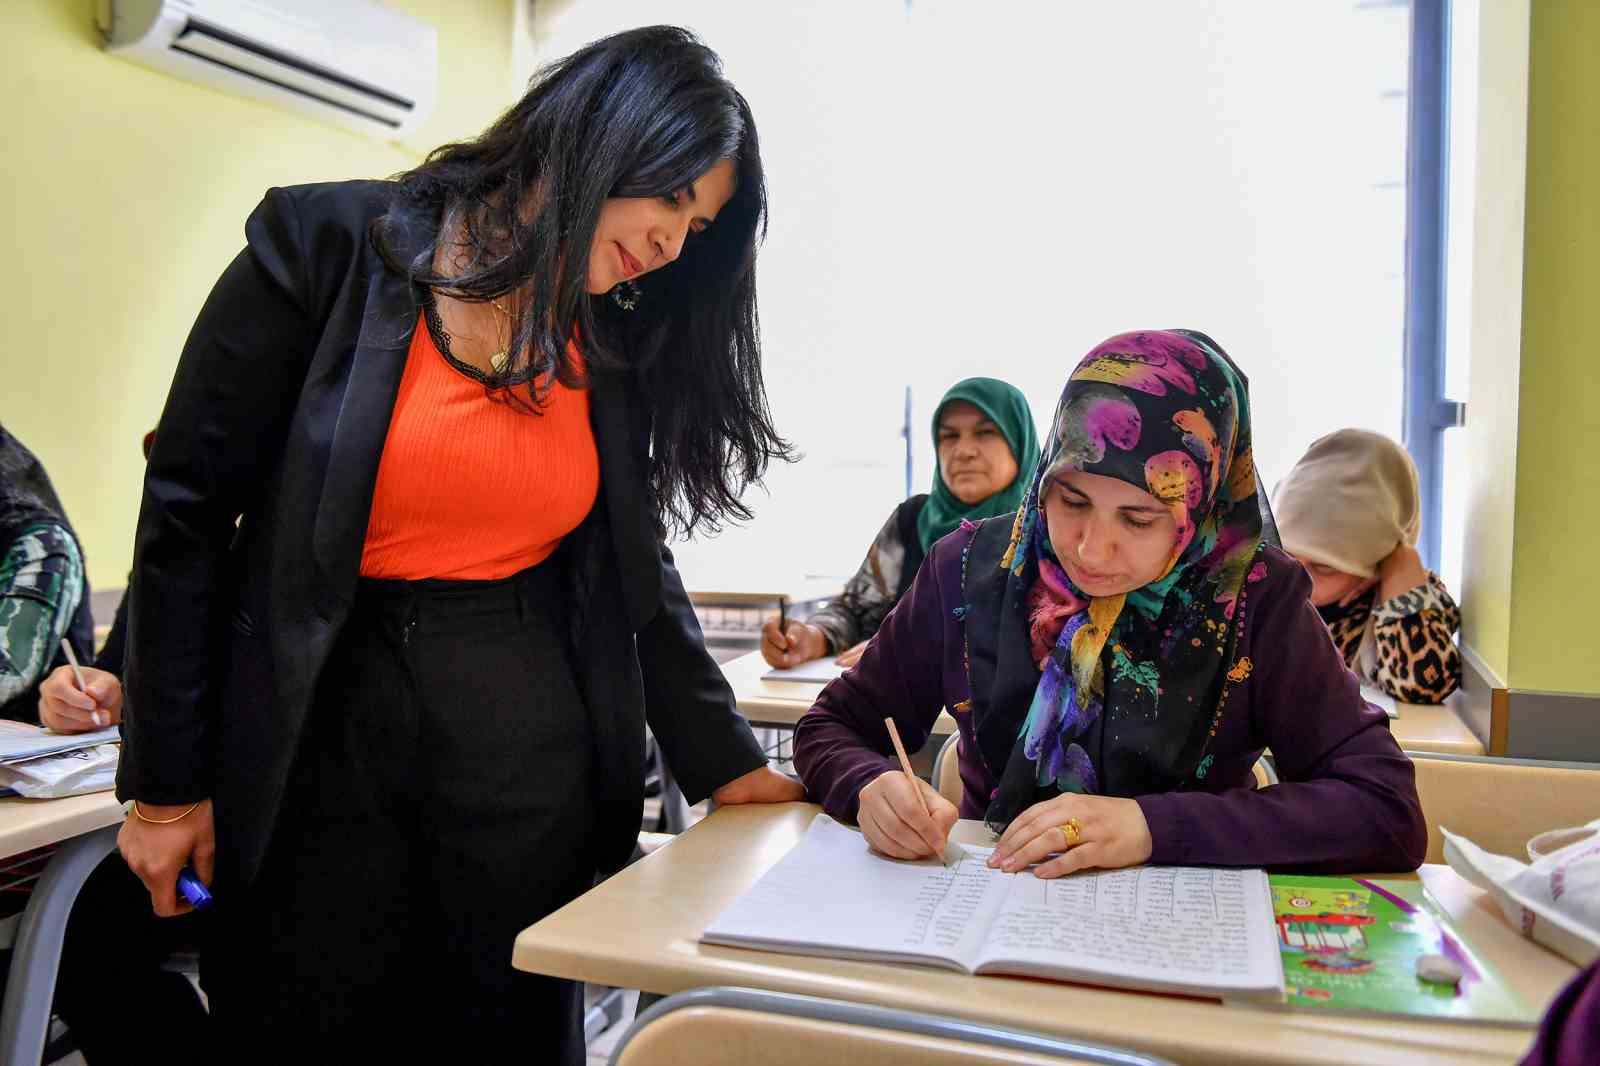 Mersin’de kadınlar belediyenin desteği ile okuma yazma öğreniyor
